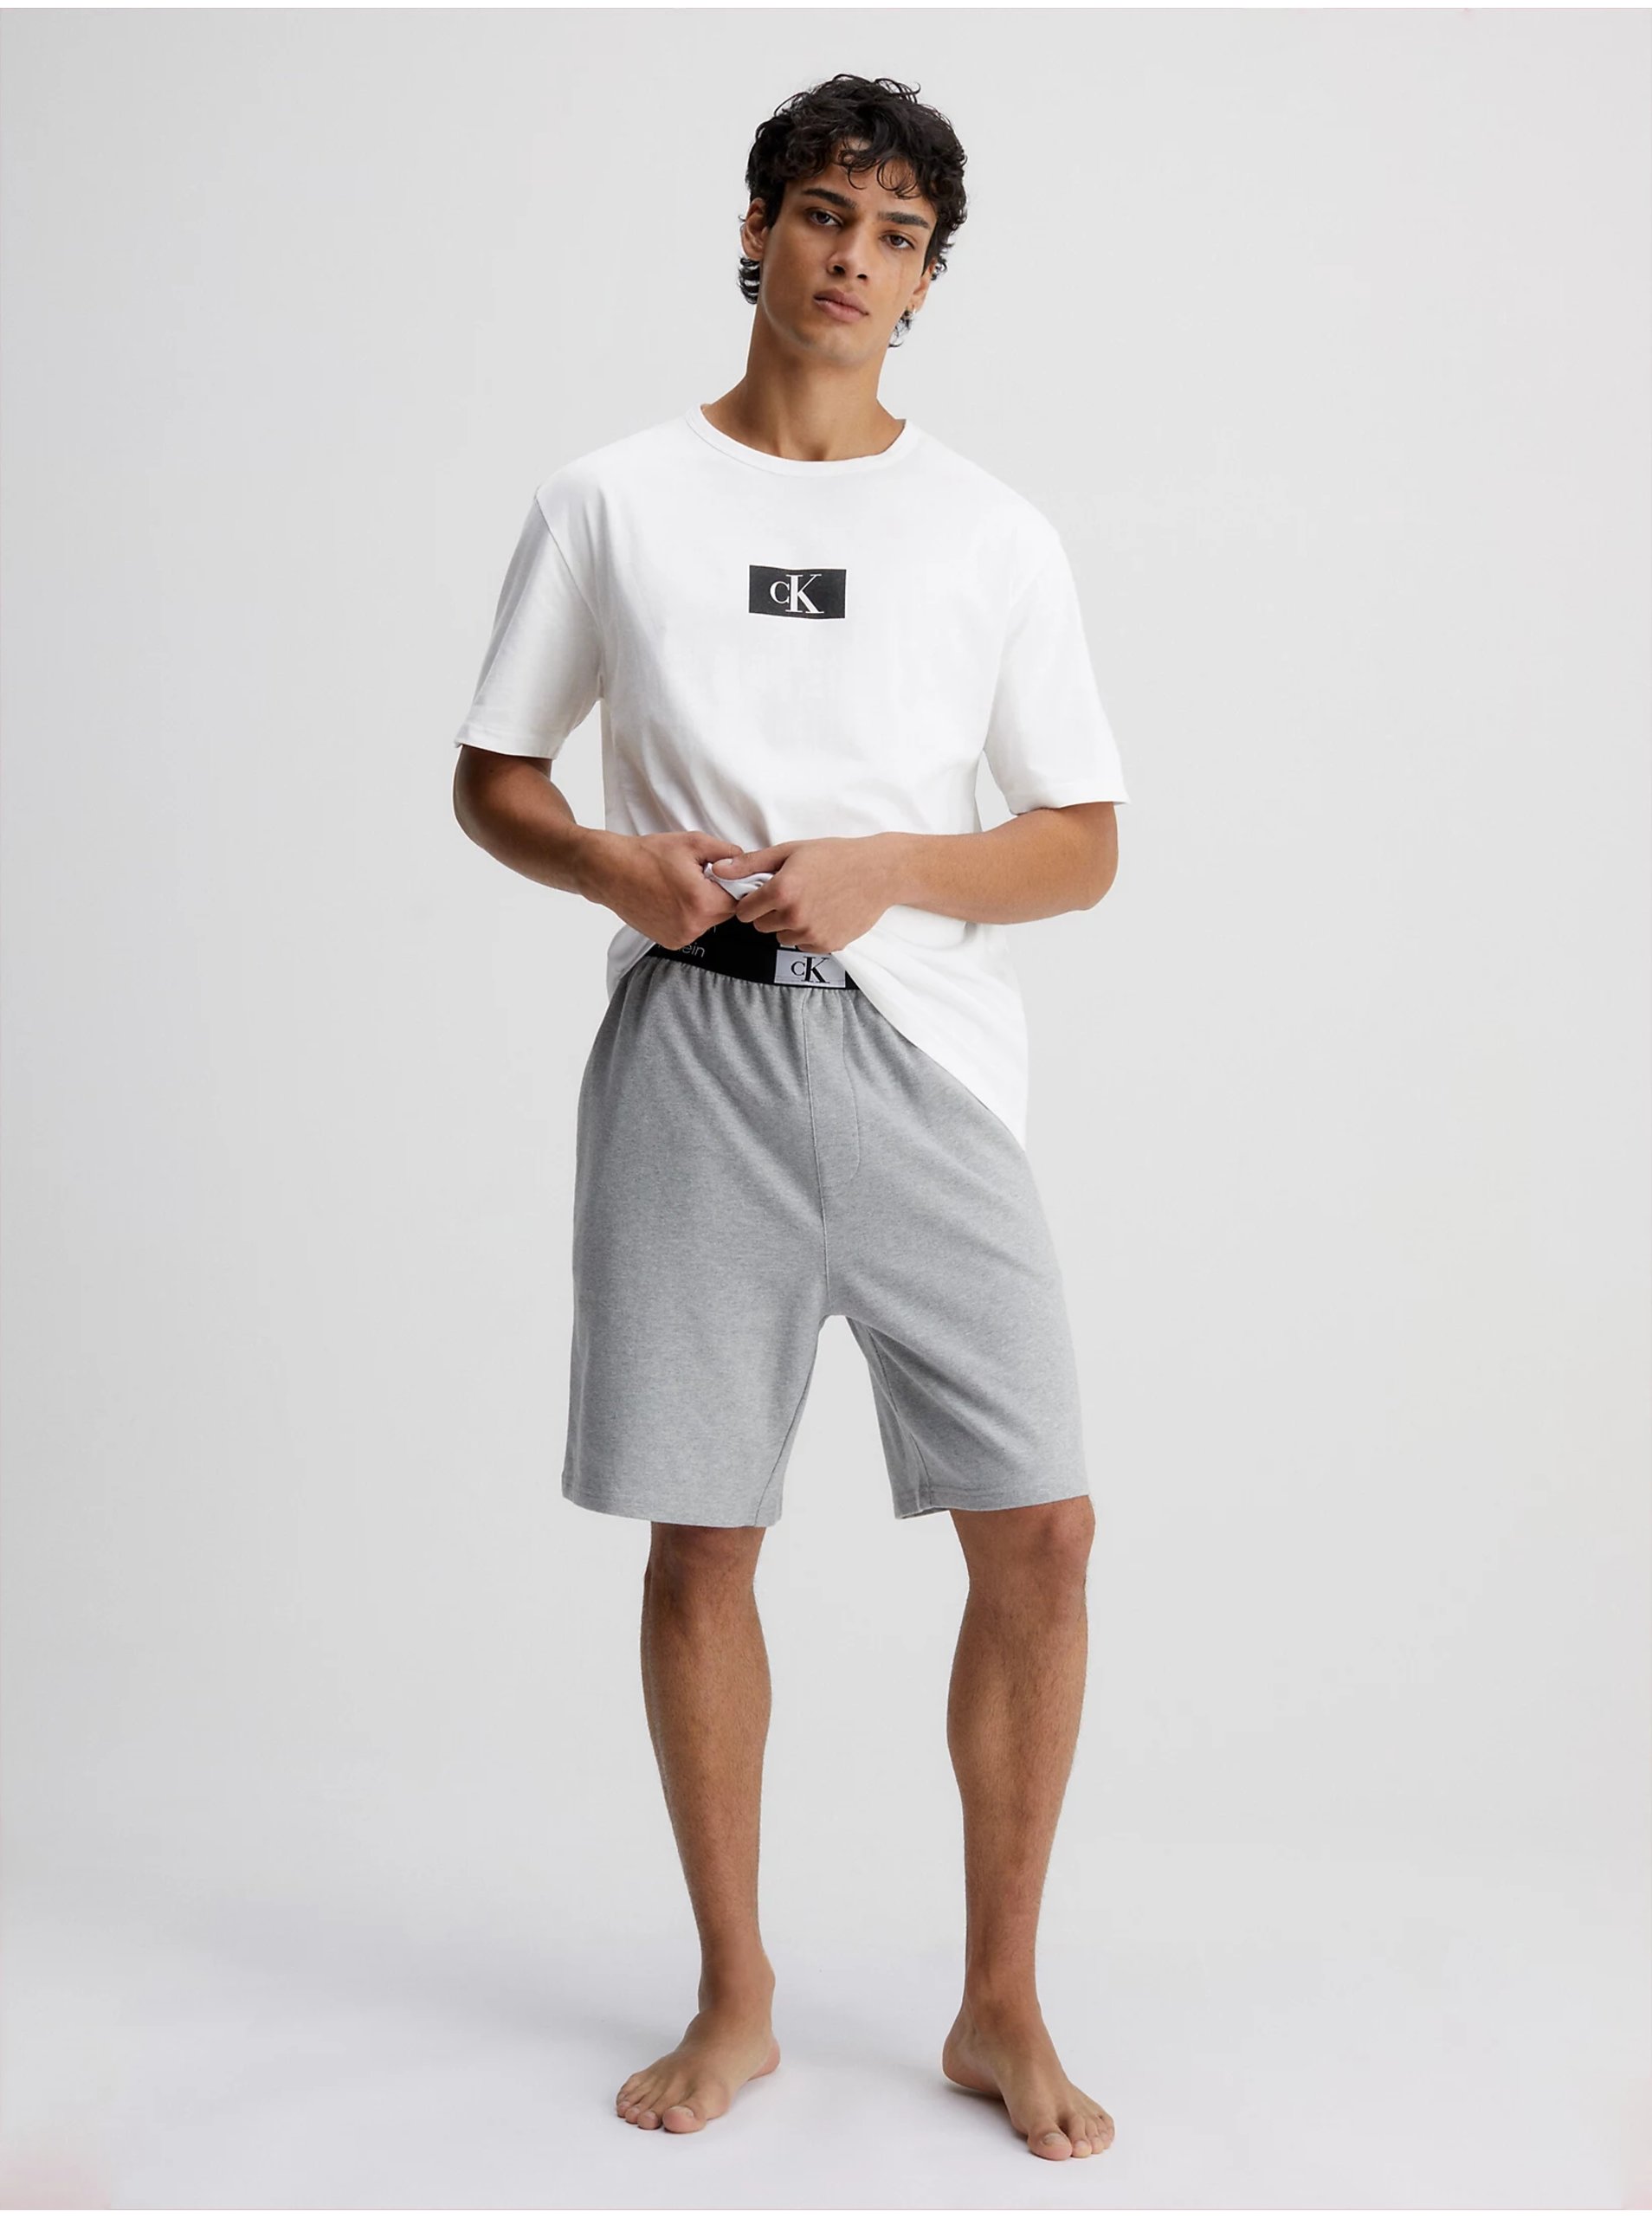 Pánske tričko Calvin Klein